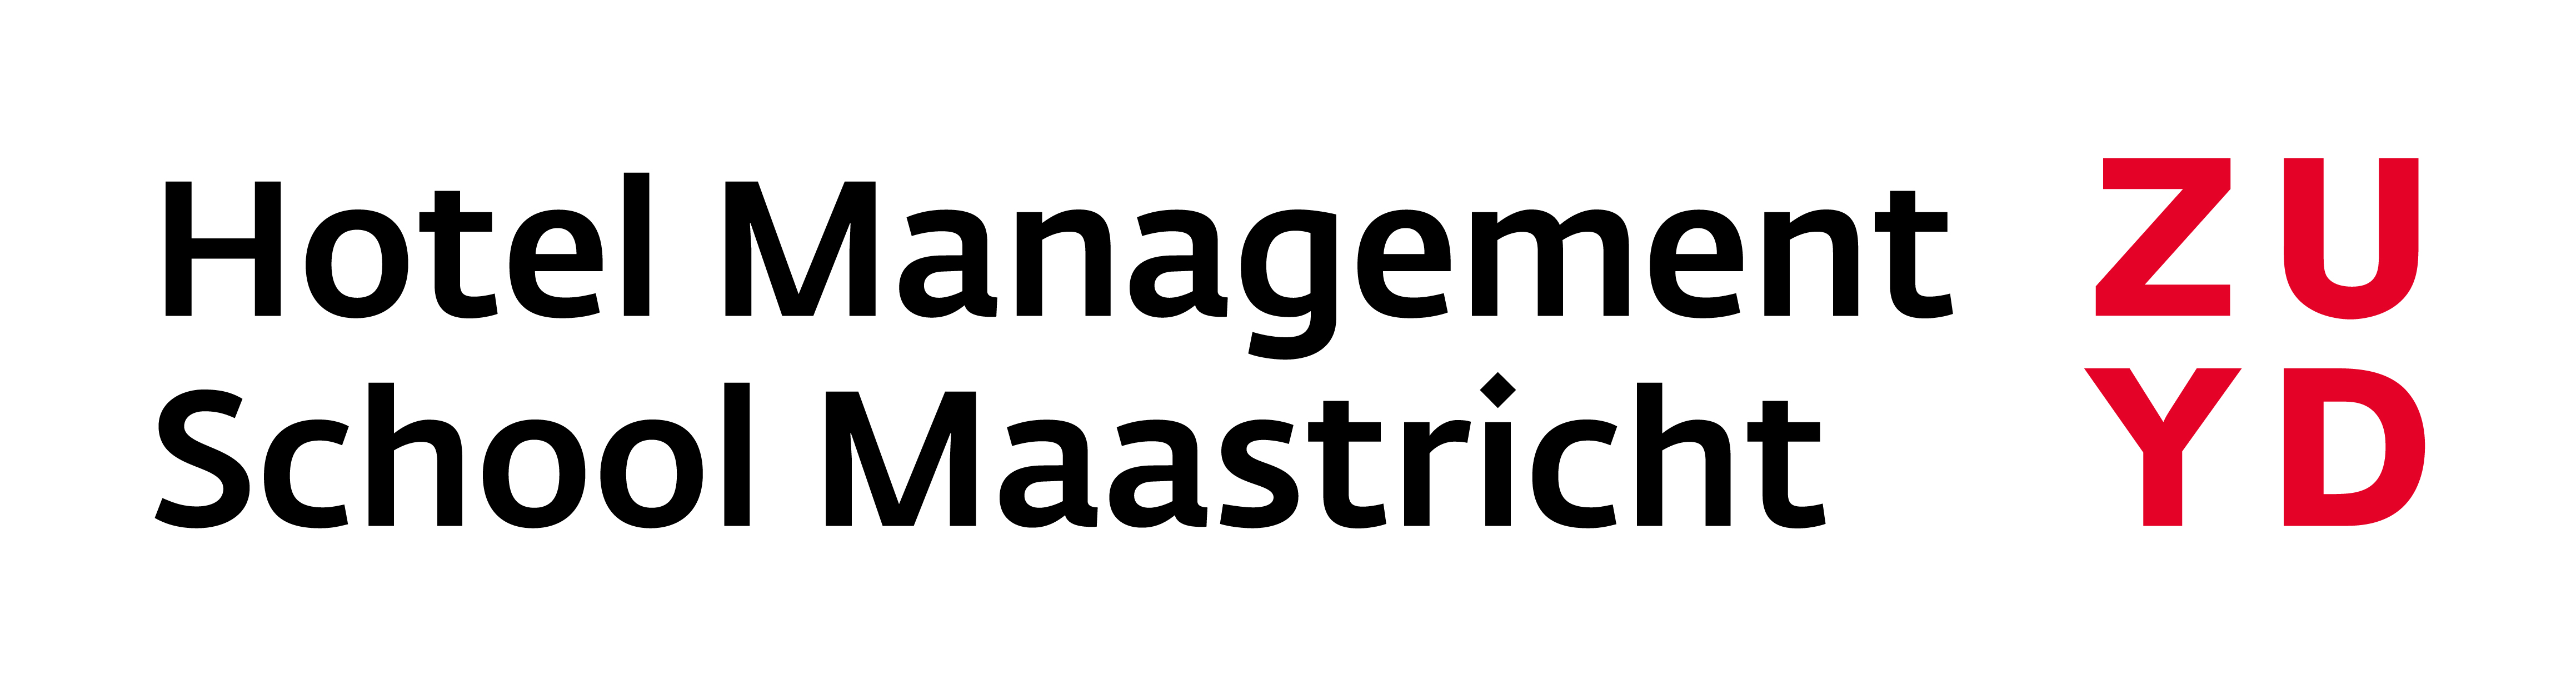 Hotel Management School Maastricht 